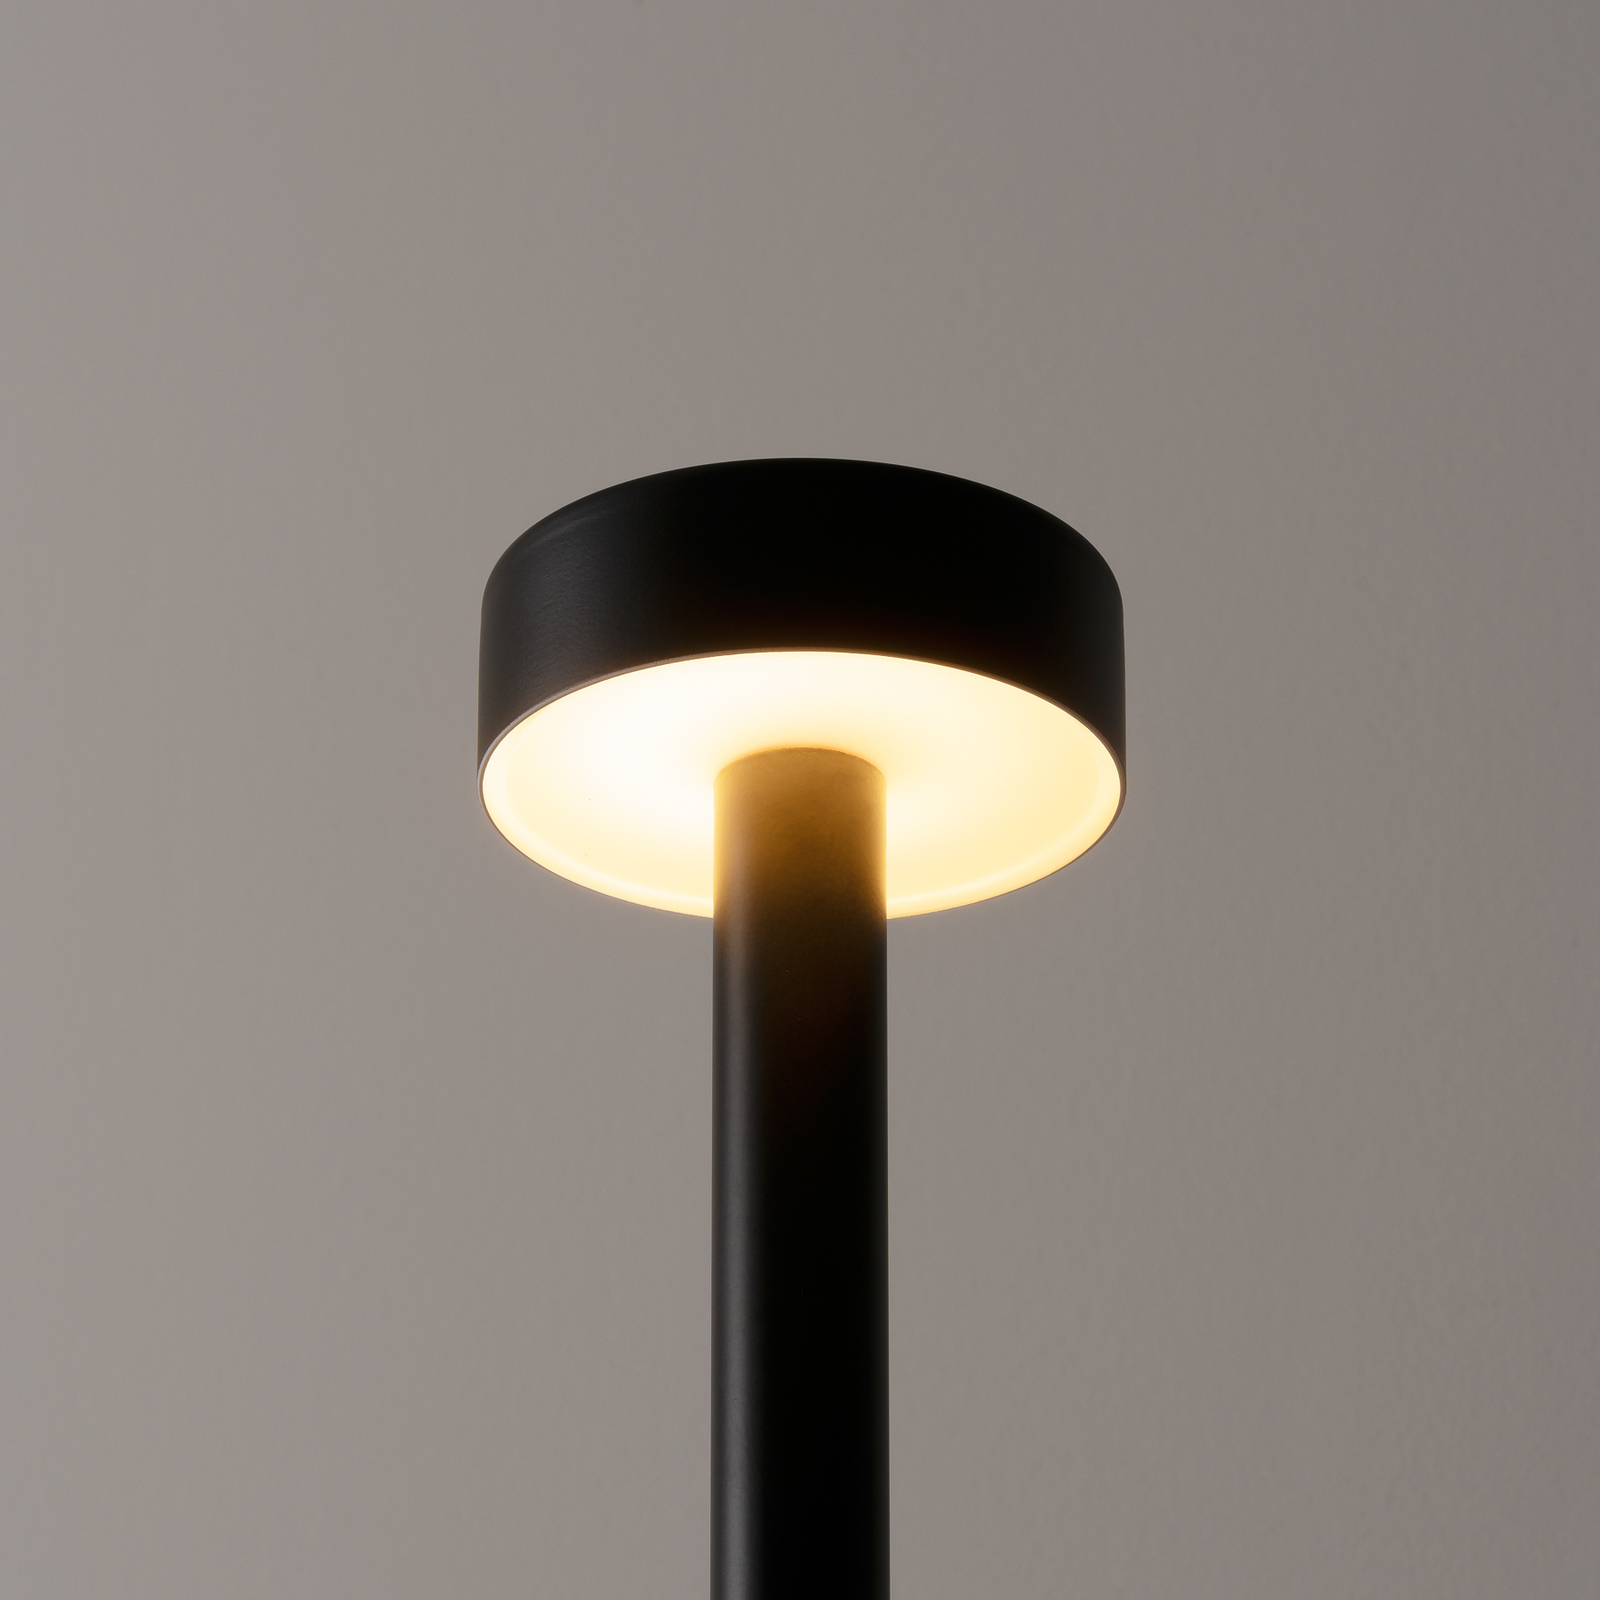 Milan Peak Lane stolová LED, dizajnérsky kúsok